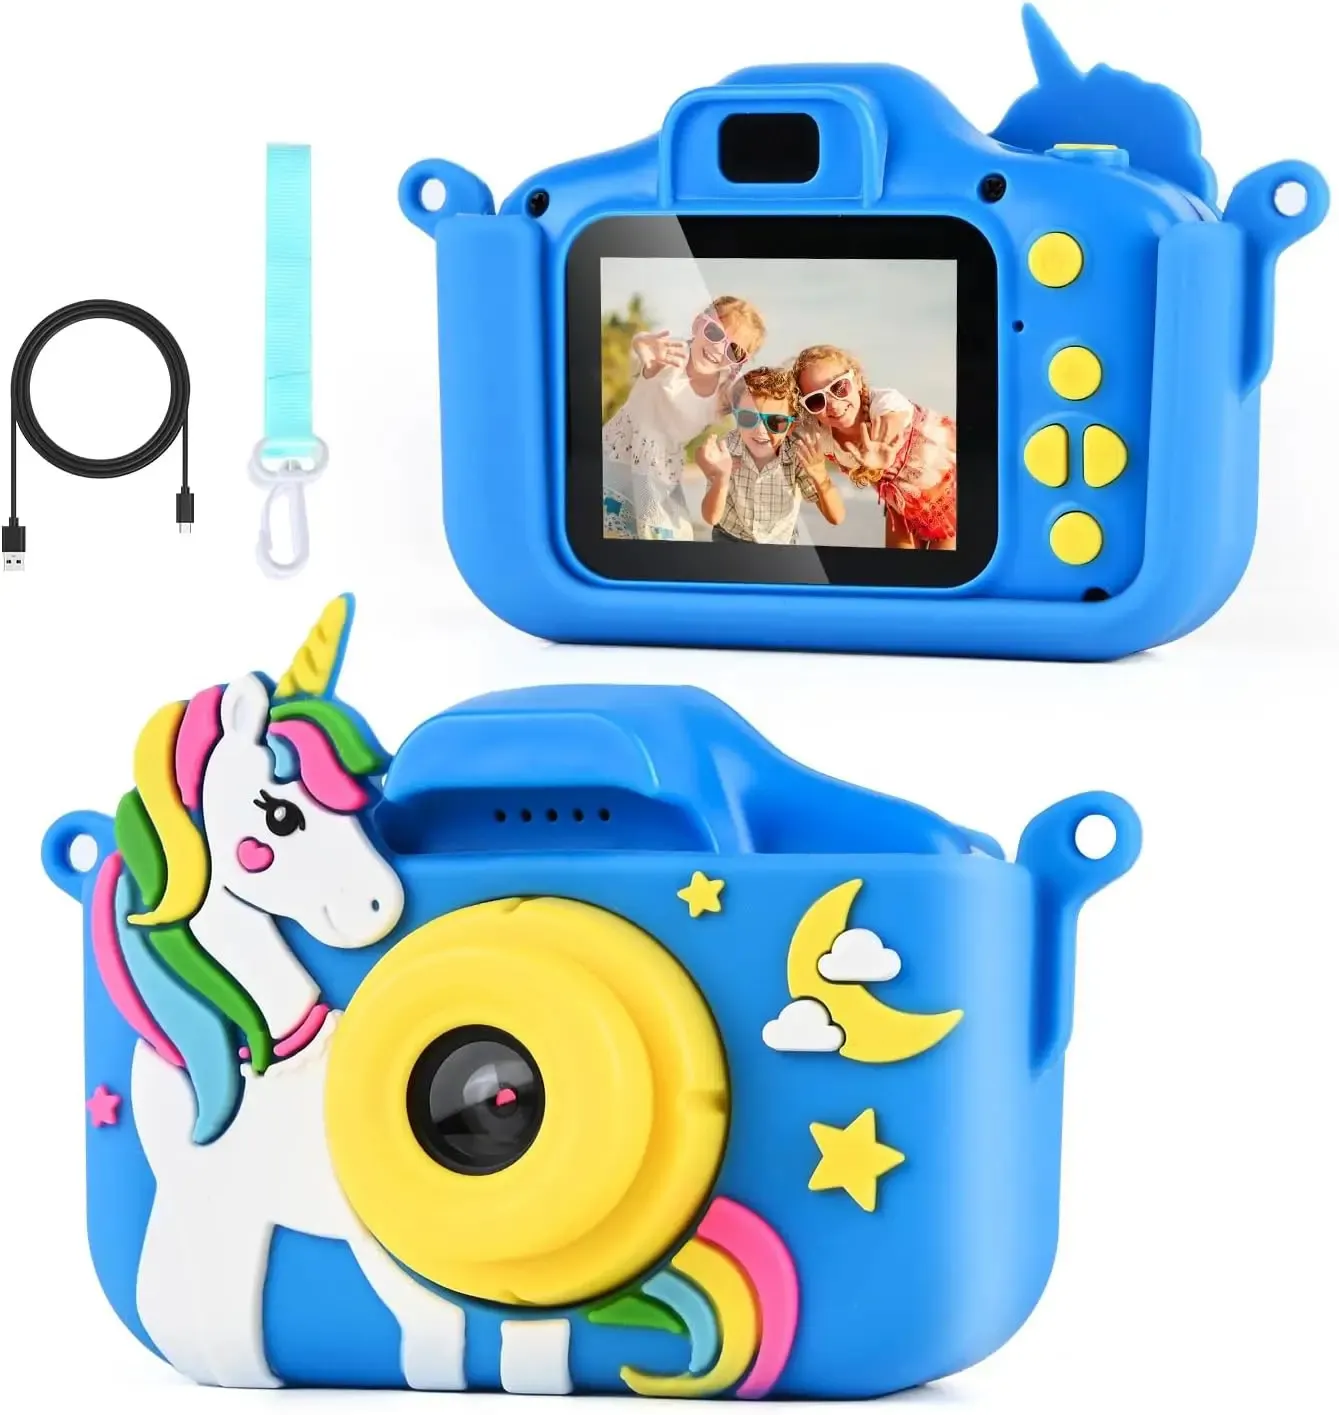 아이 장난감 어린이 카메라 귀여운 선물 어린이 2 인치 화면 디지털 카메라 사진 풀 HD 디스플레이 1080p 미니 비디오 SLR 어린이 카메라